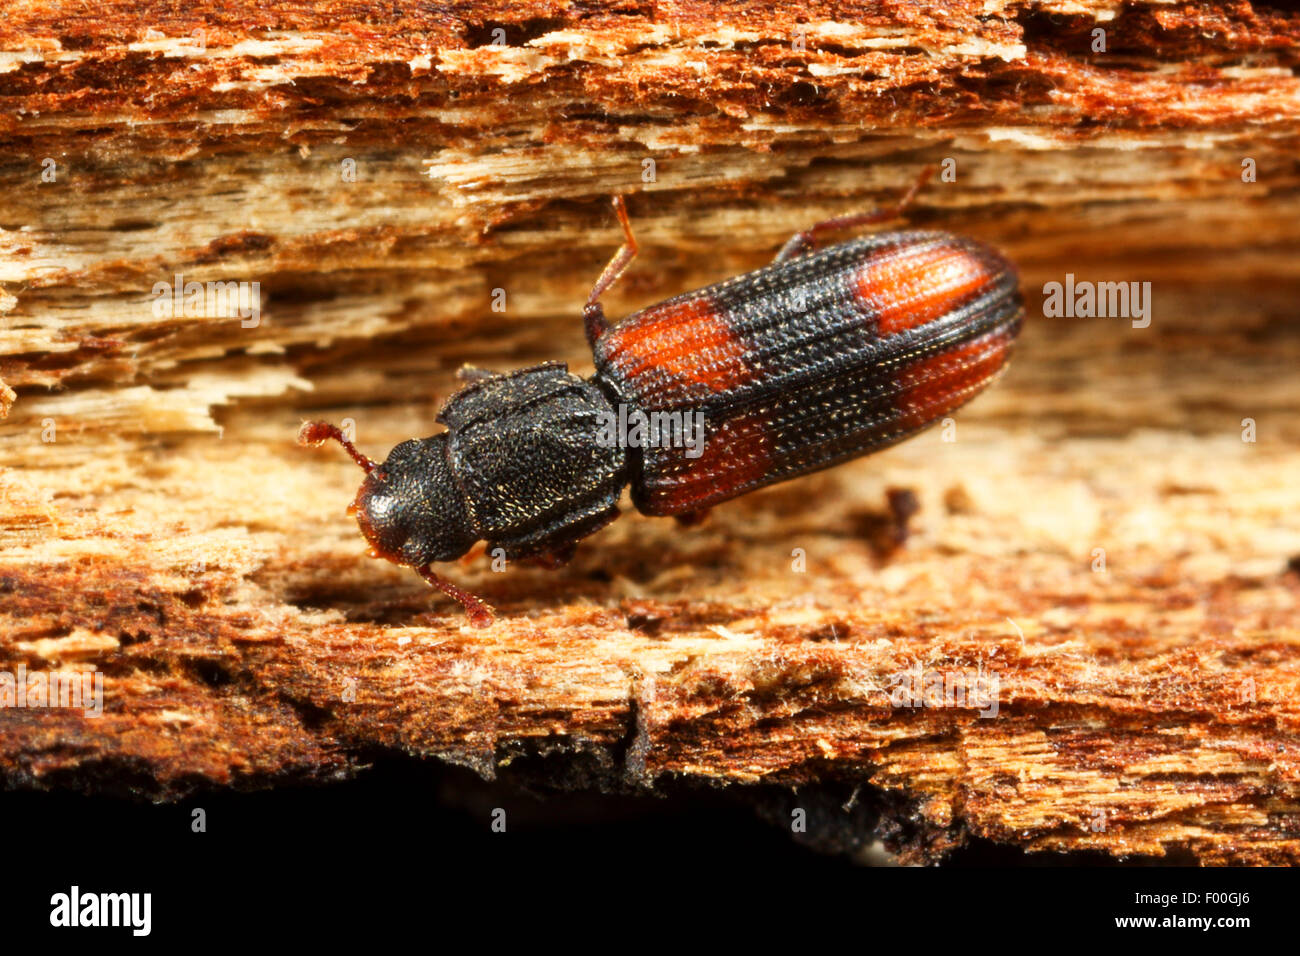 Saddle-backed Bitoma, Wedge-shaped Beetle (Bitoma crenata, Ditoma crenata), on deadwood, Germany Stock Photo